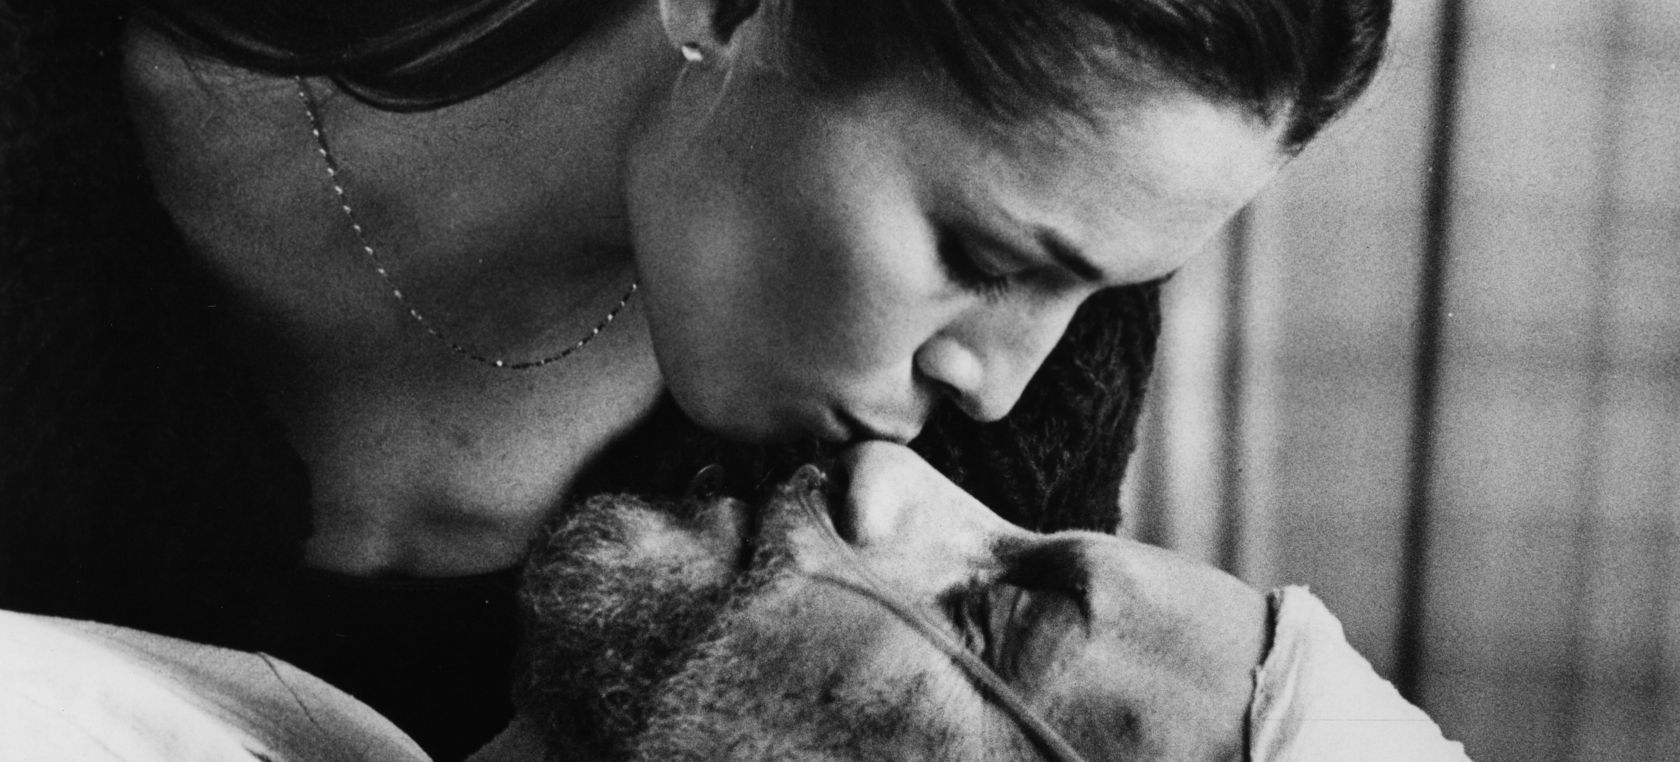 10 películas que nos hicieron reflexionar sobre el dilema de la eutanasia